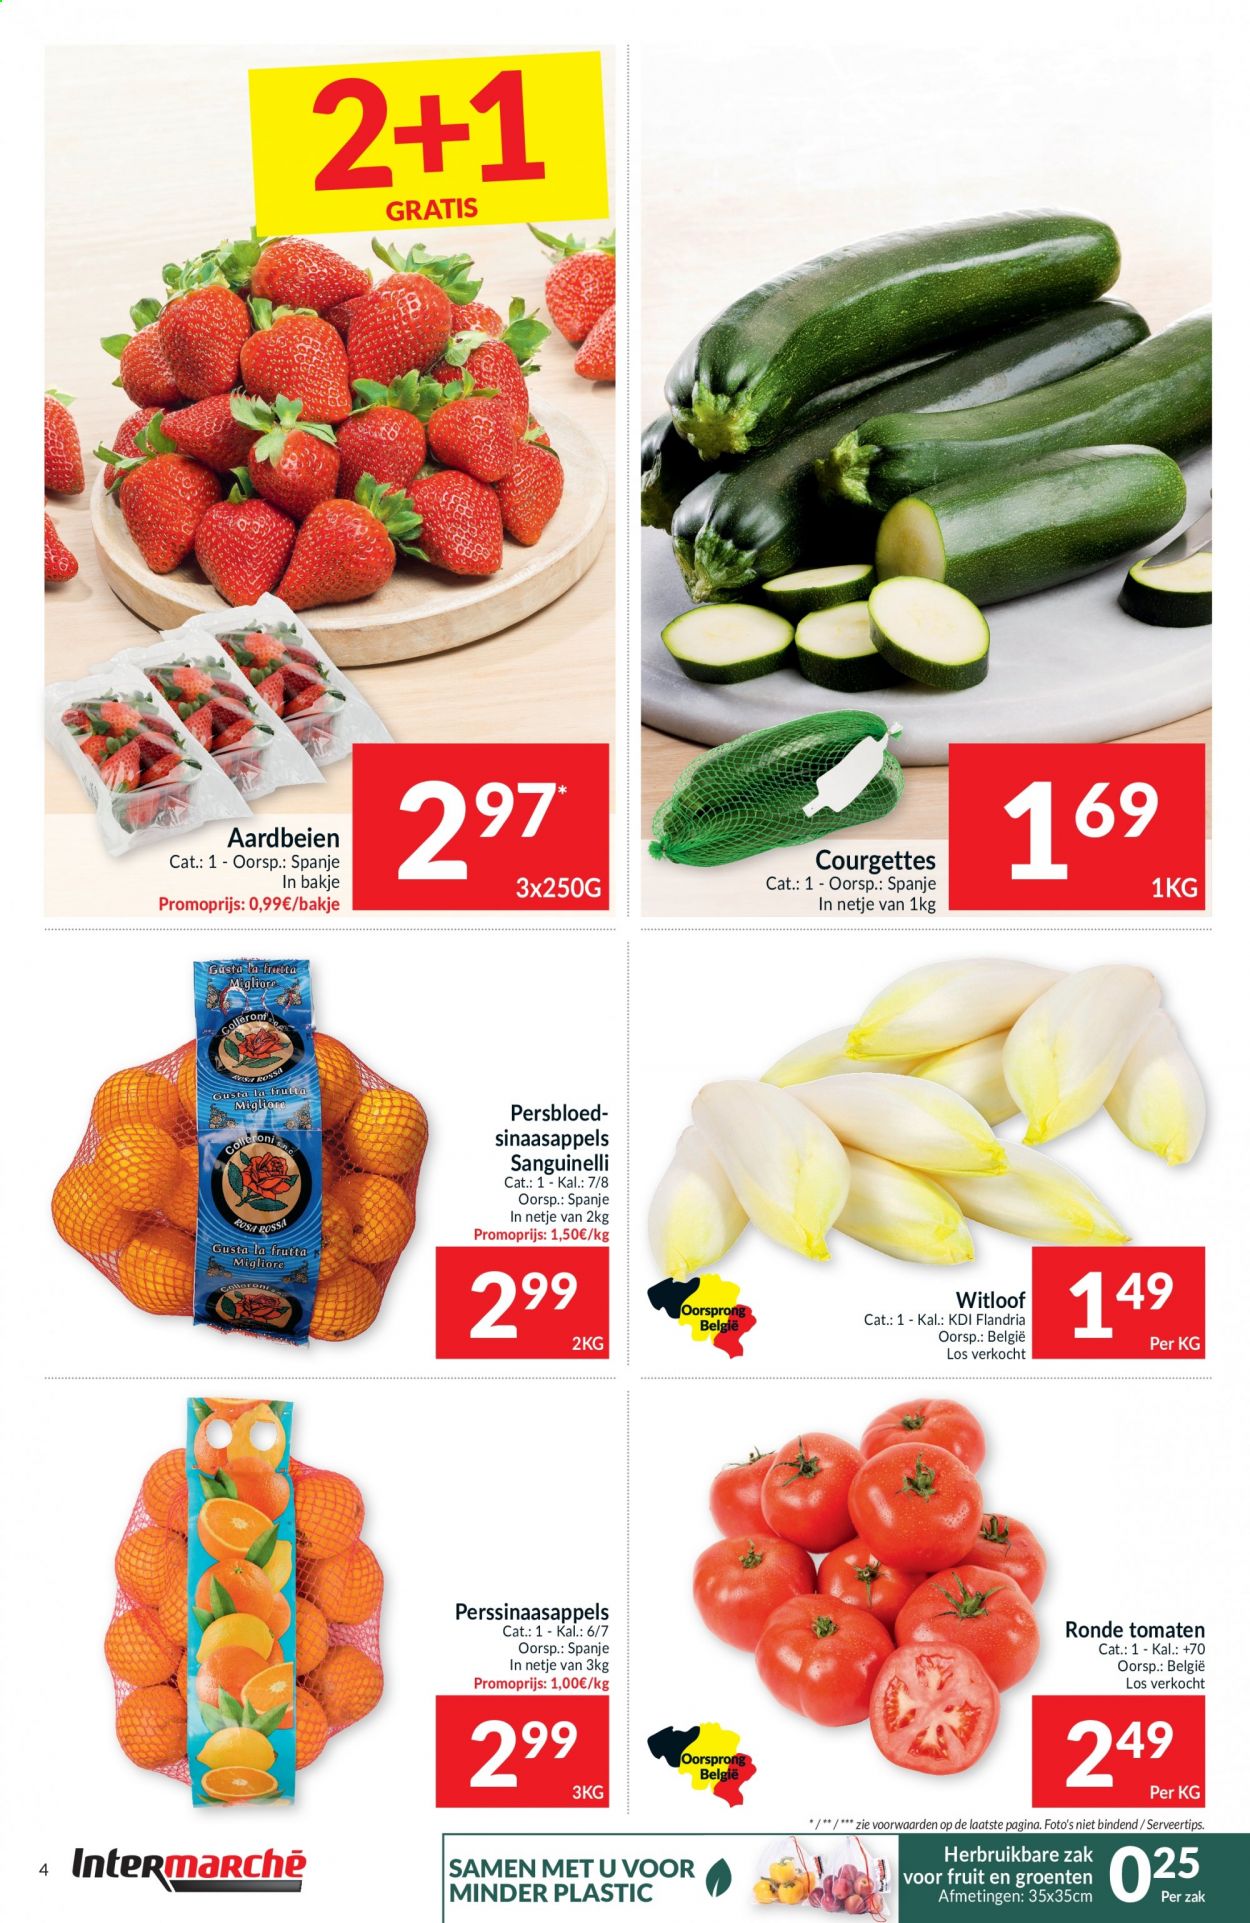 thumbnail - Intermarché-aanbieding - 23/02/2021 - 28/02/2021 -  producten in de aanbieding - aardbeien, perssinaasappels. Pagina 4.